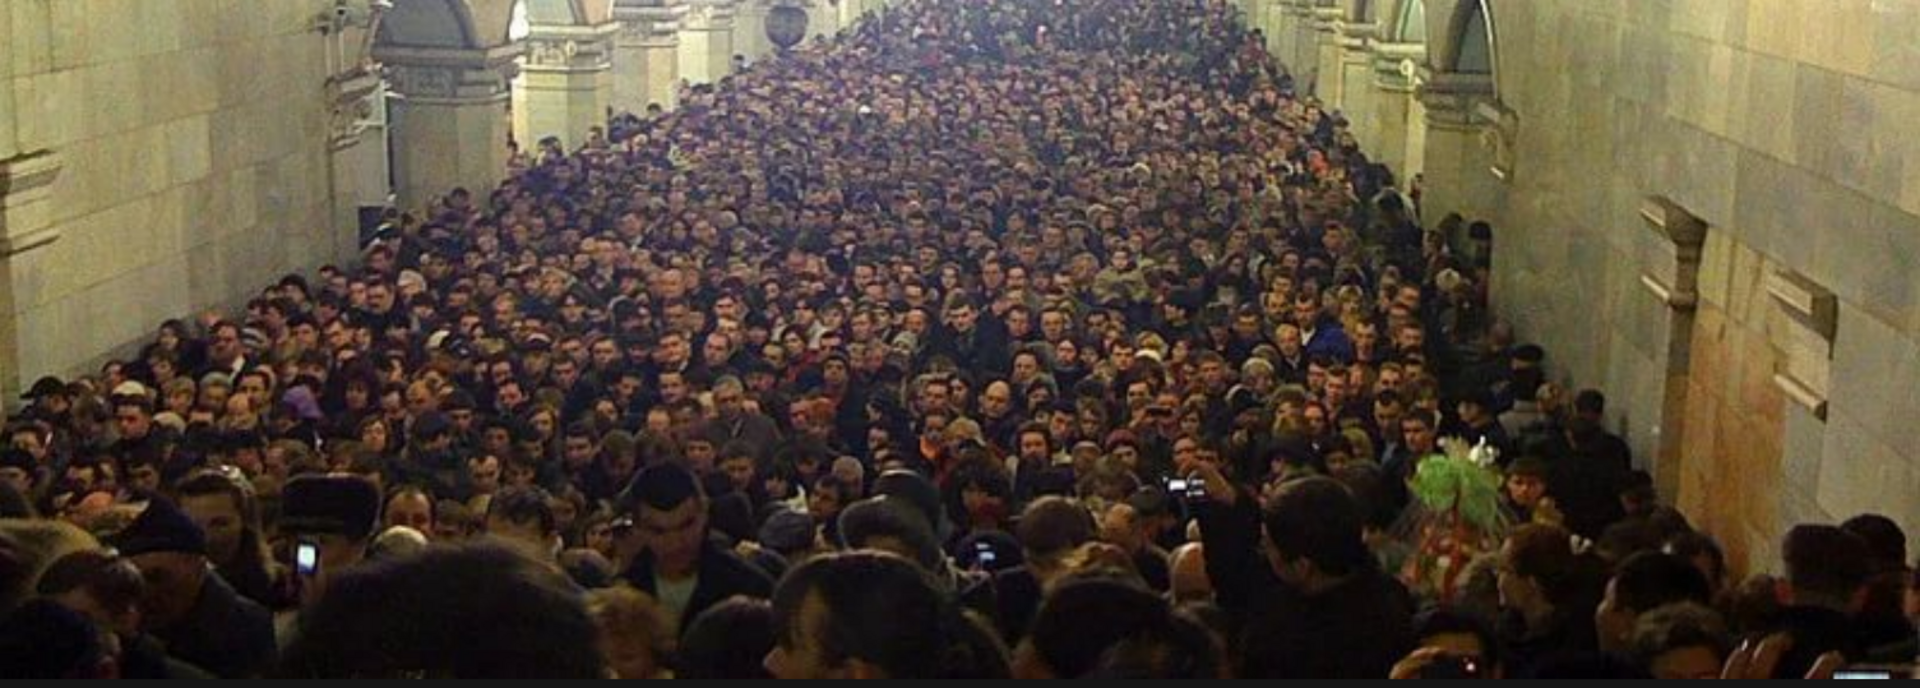 Давка в метро час пик Москве. Час пик в метро в Москве. Толпа людей в метро. Московское метро толпа. Какой человек живет в москве